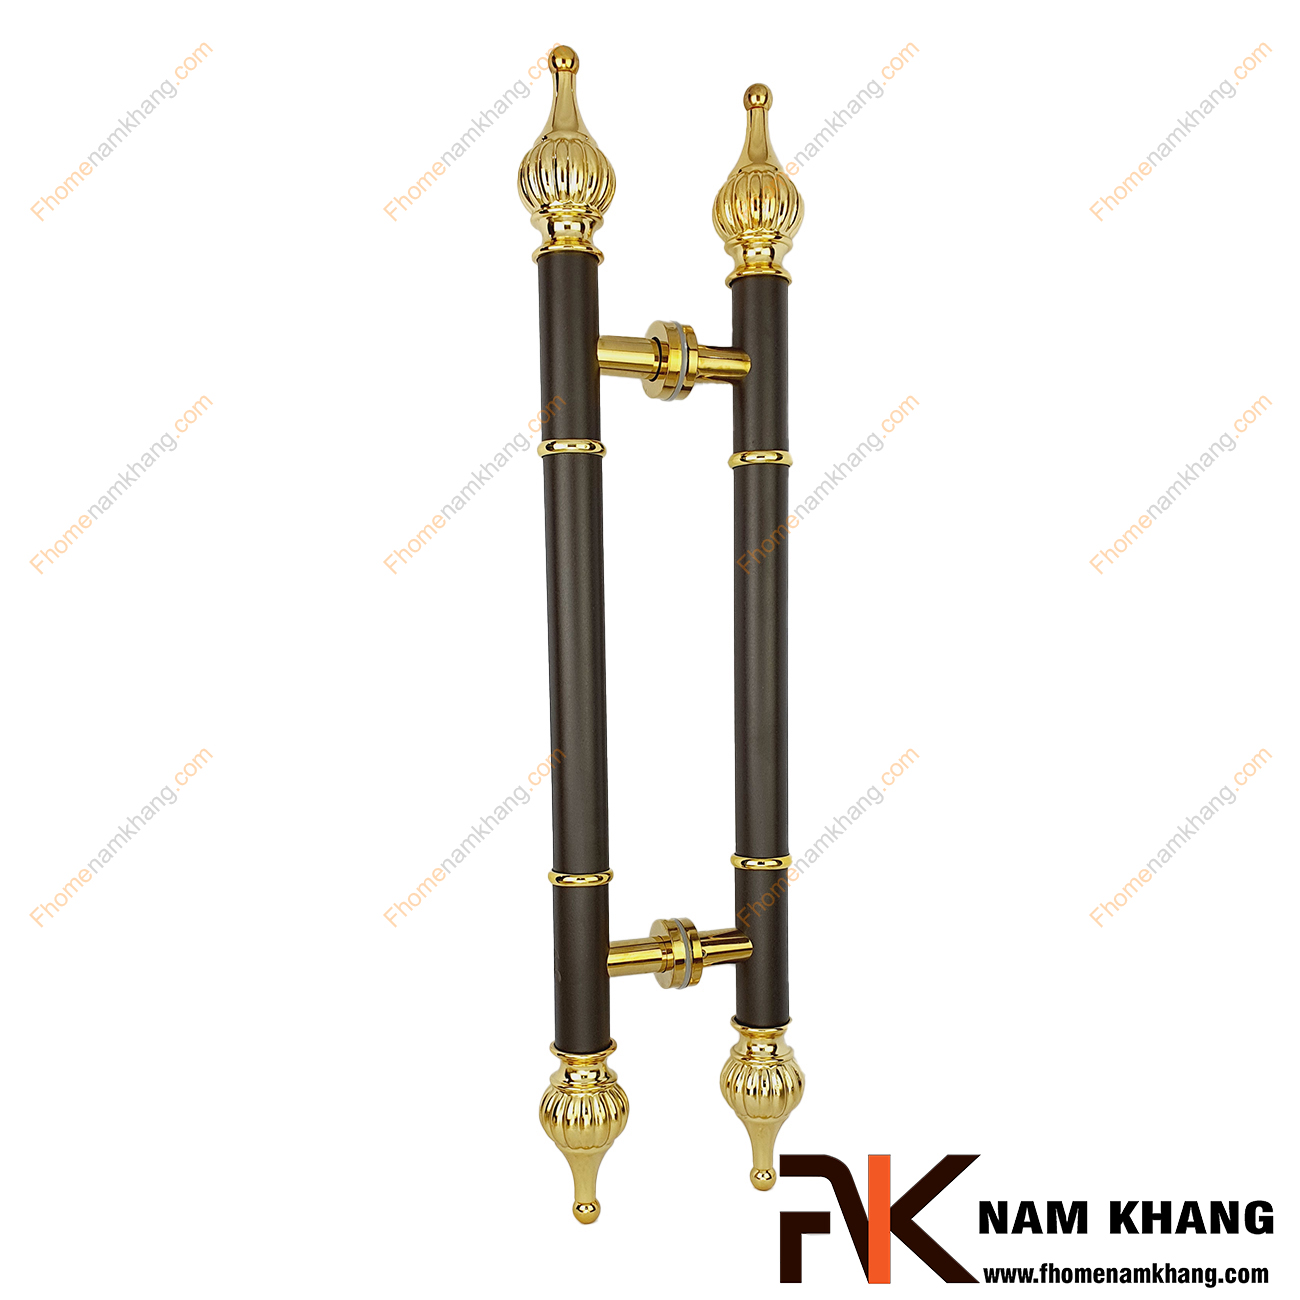 Tay nắm cửa chính dạng thân đen phối đầu hoa vàng NKC010-DV là dạng tay nắm đồng tâm dùng cho nhiều loại cửa với đầy đủ các chất liệu theo thiết kế nội thất.